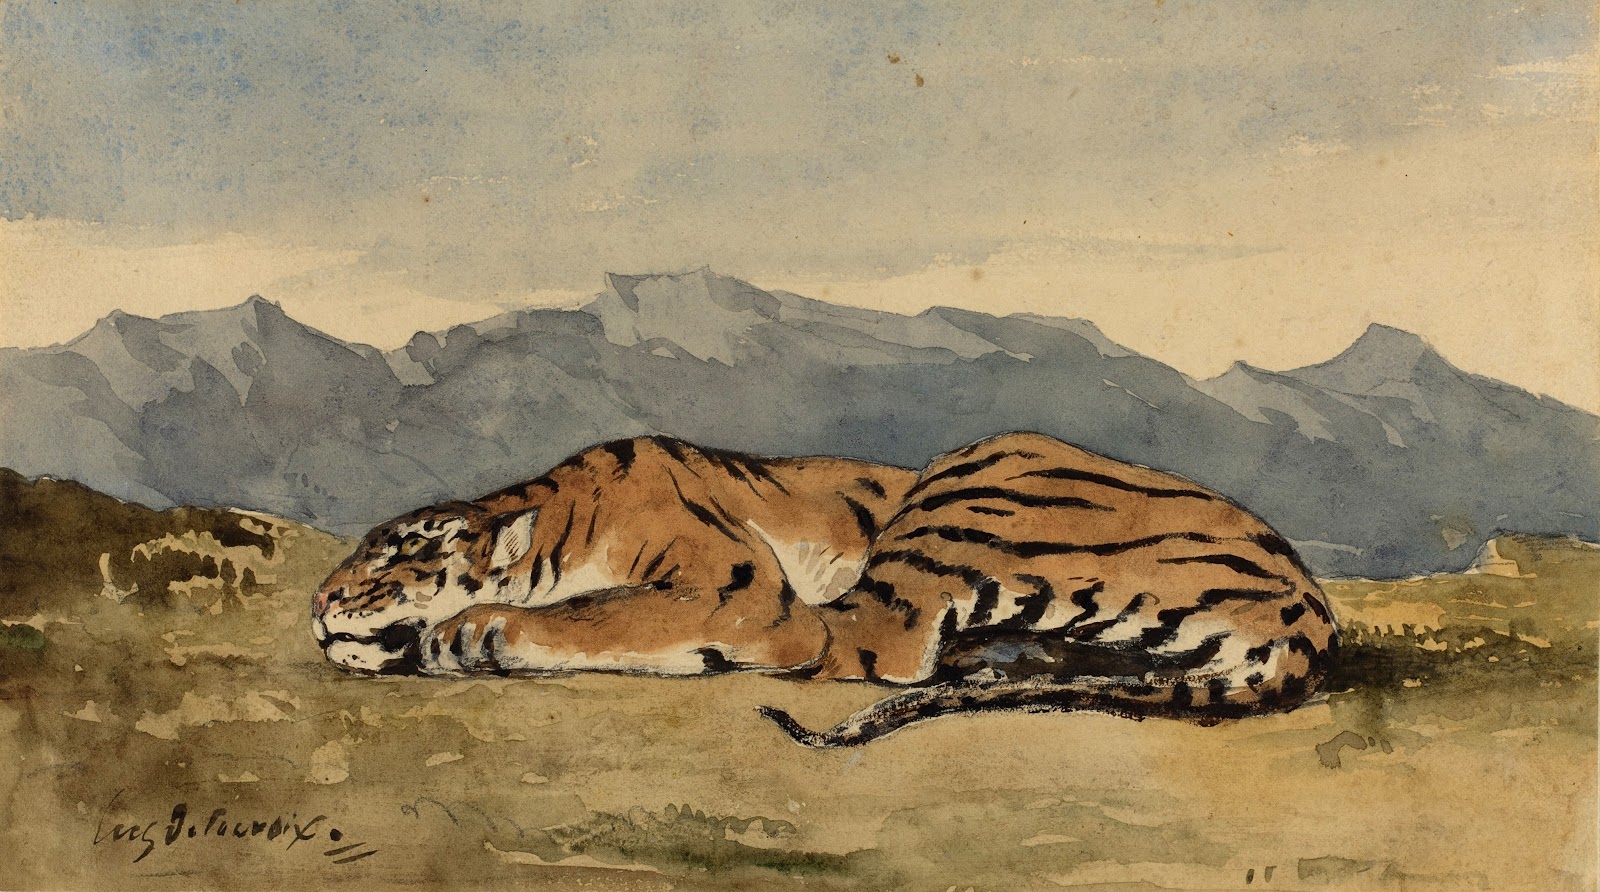 Eugene+Delacroix-1798-1863 (230).jpg